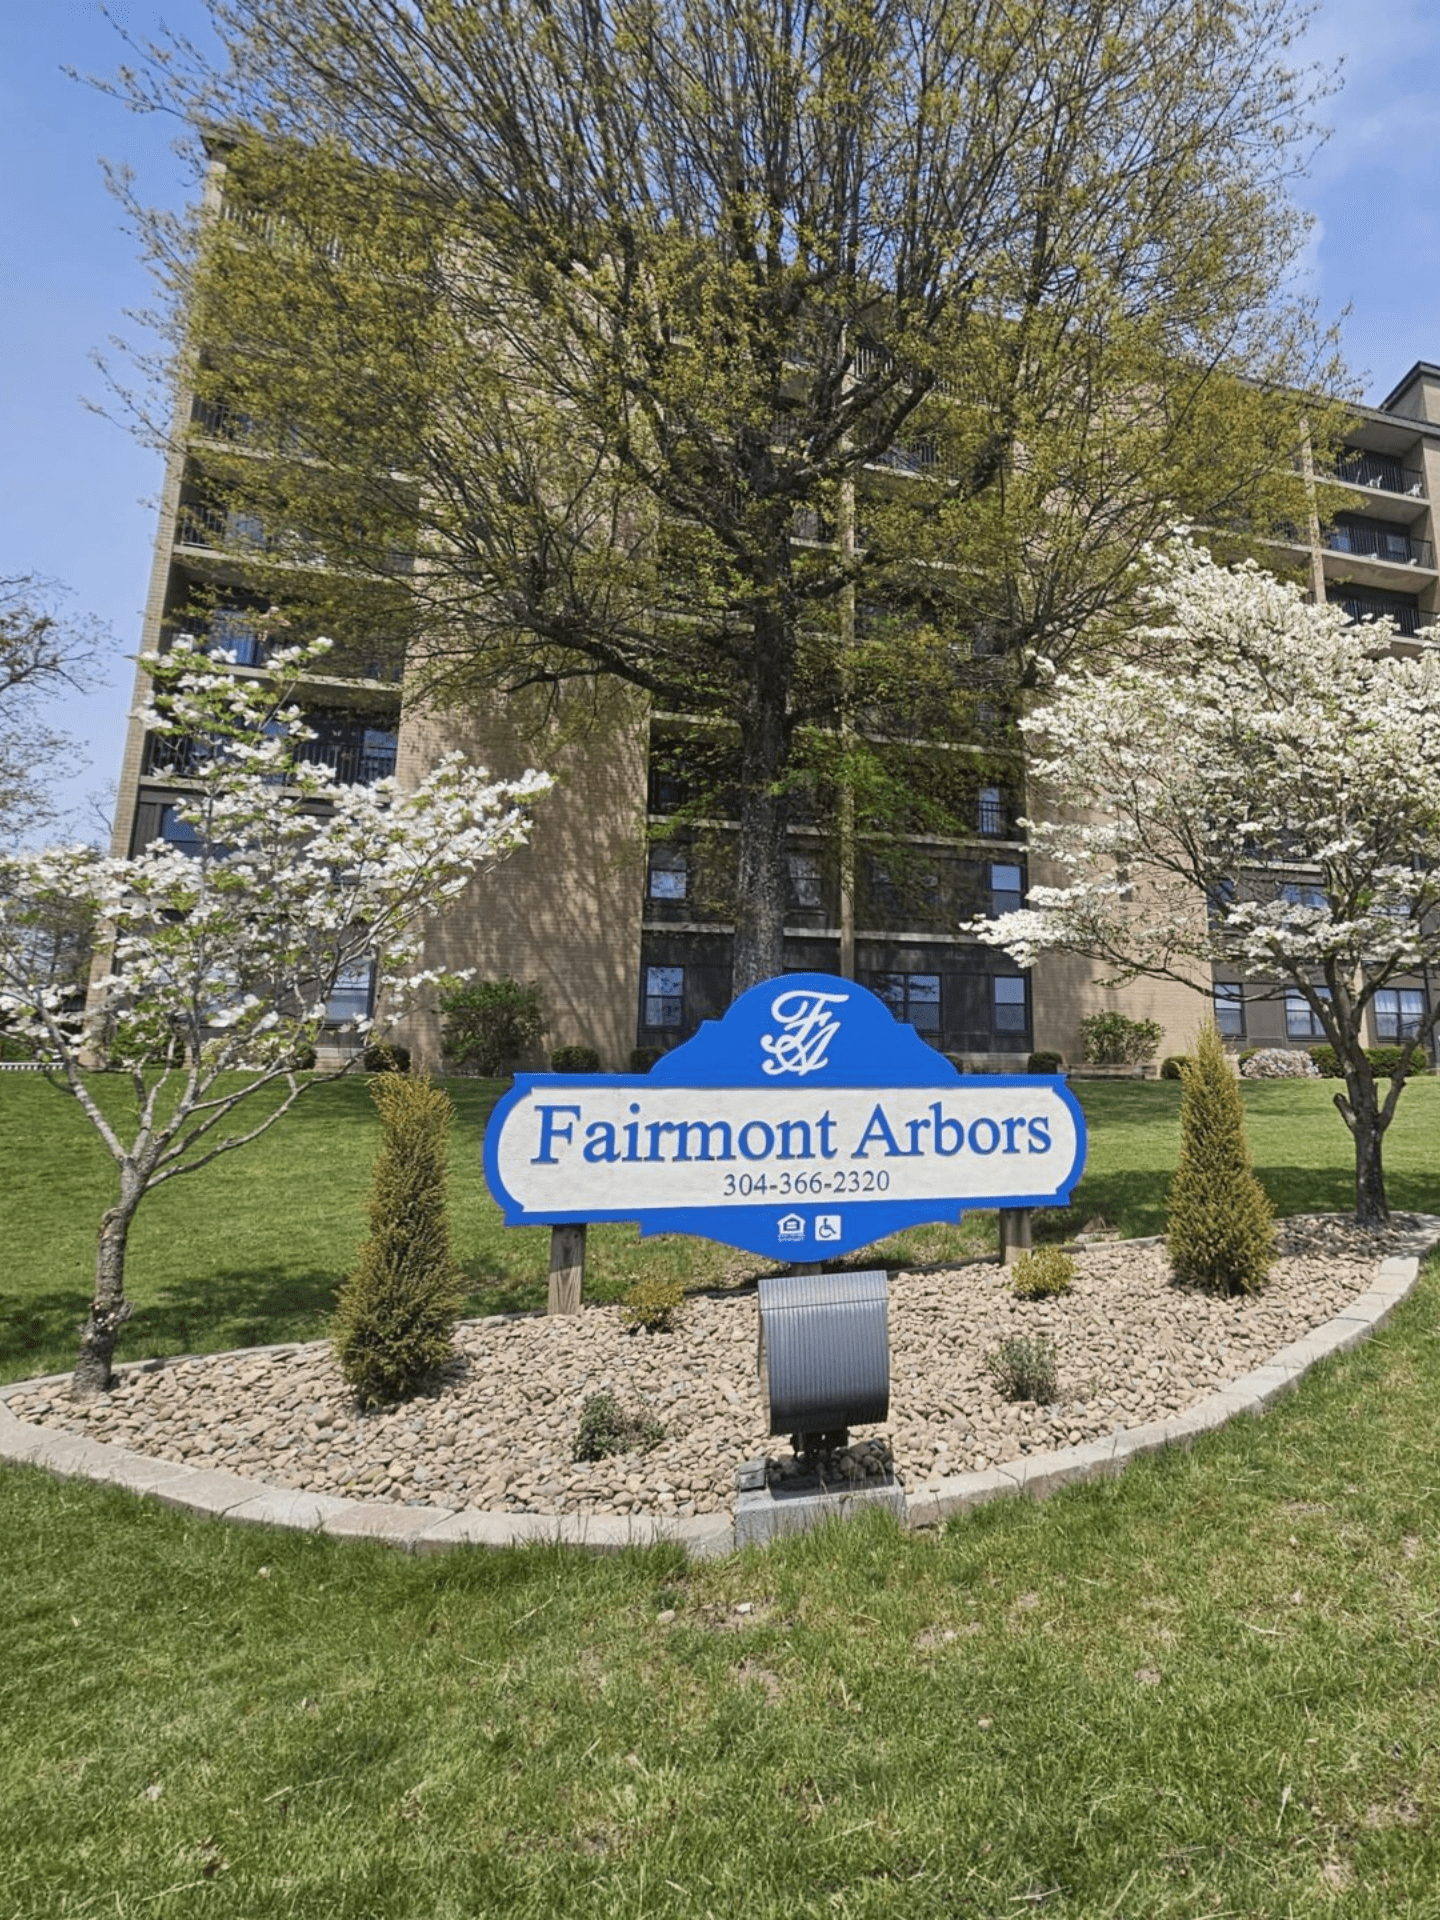 Fairmont Arbors